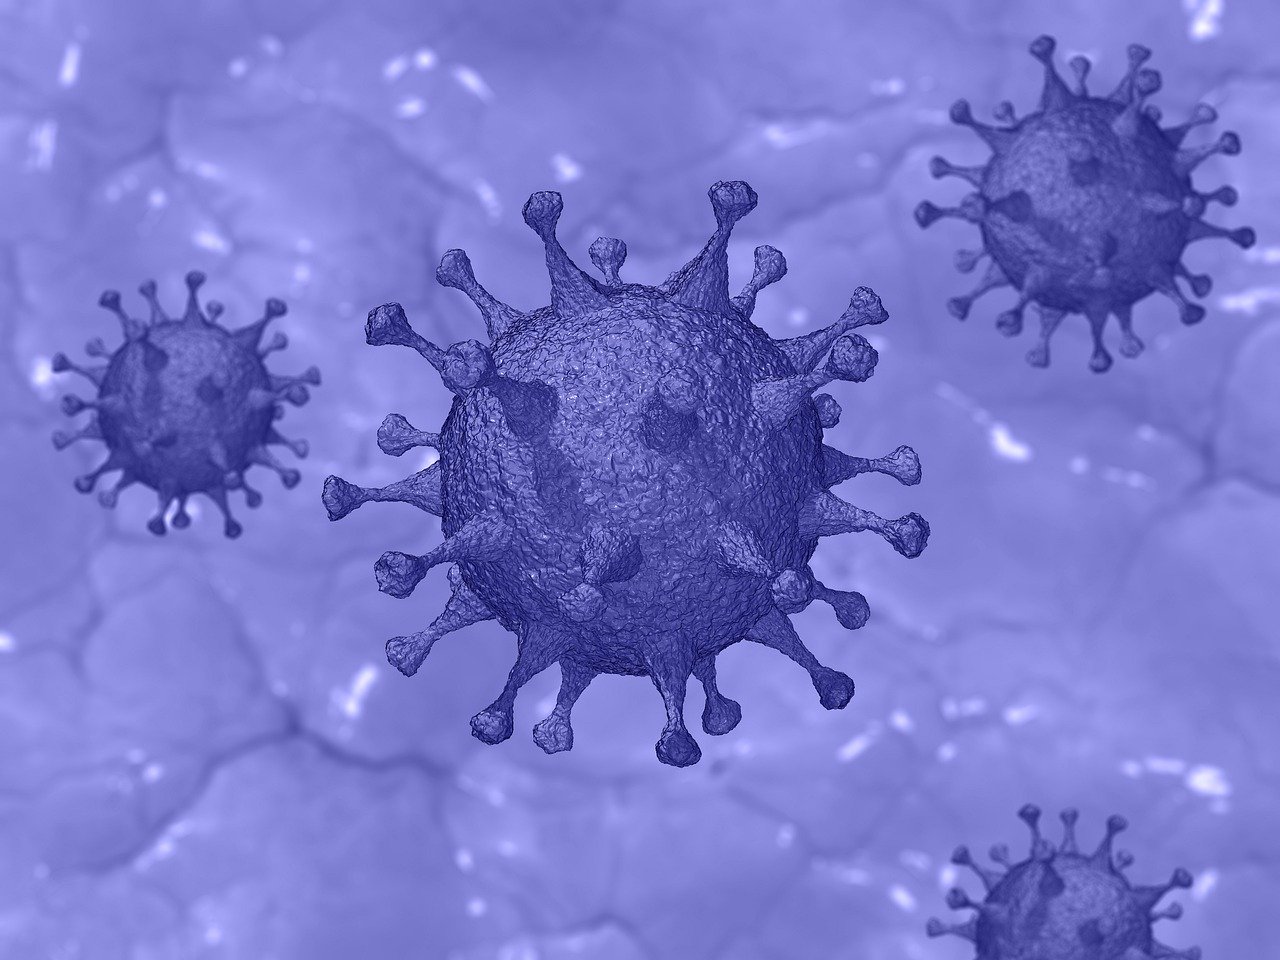 Governo ultime notizie: fase 2 e fase 3 coronavirus. In cosa consistono